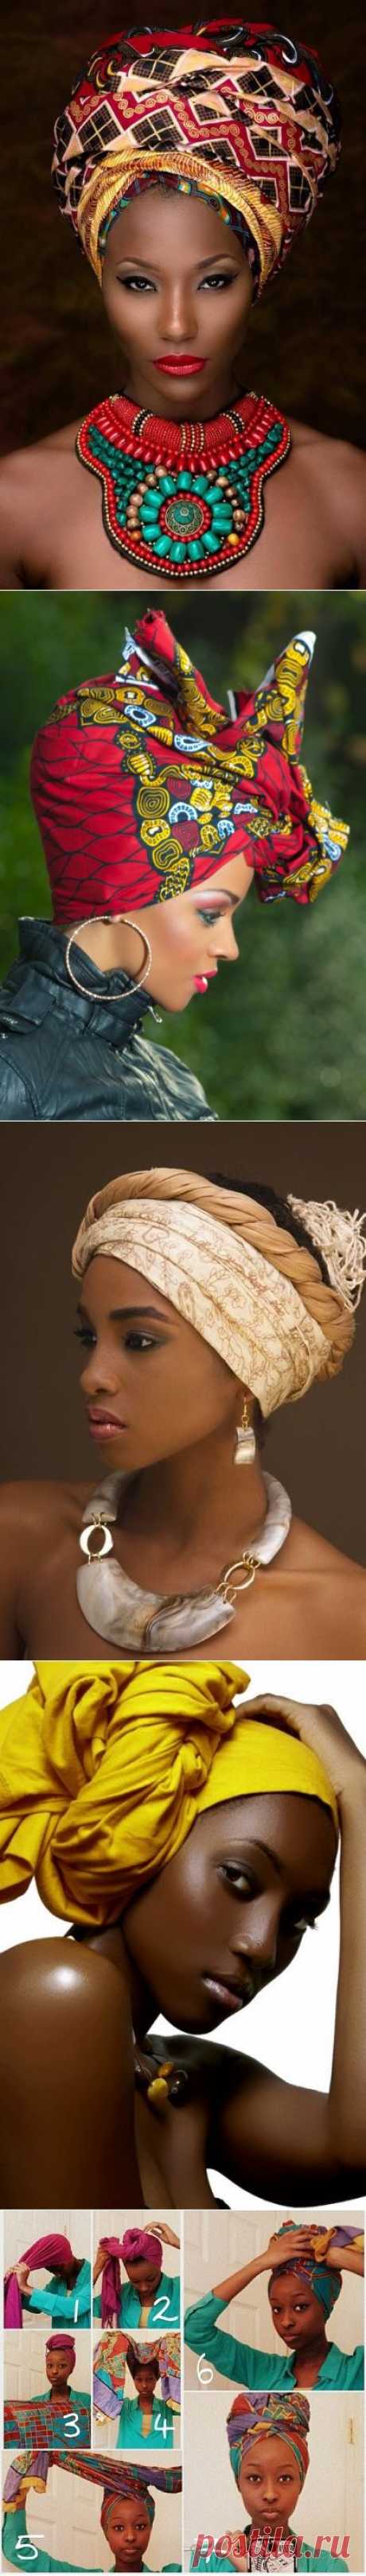 African fashion: головные уборы Африканского материка